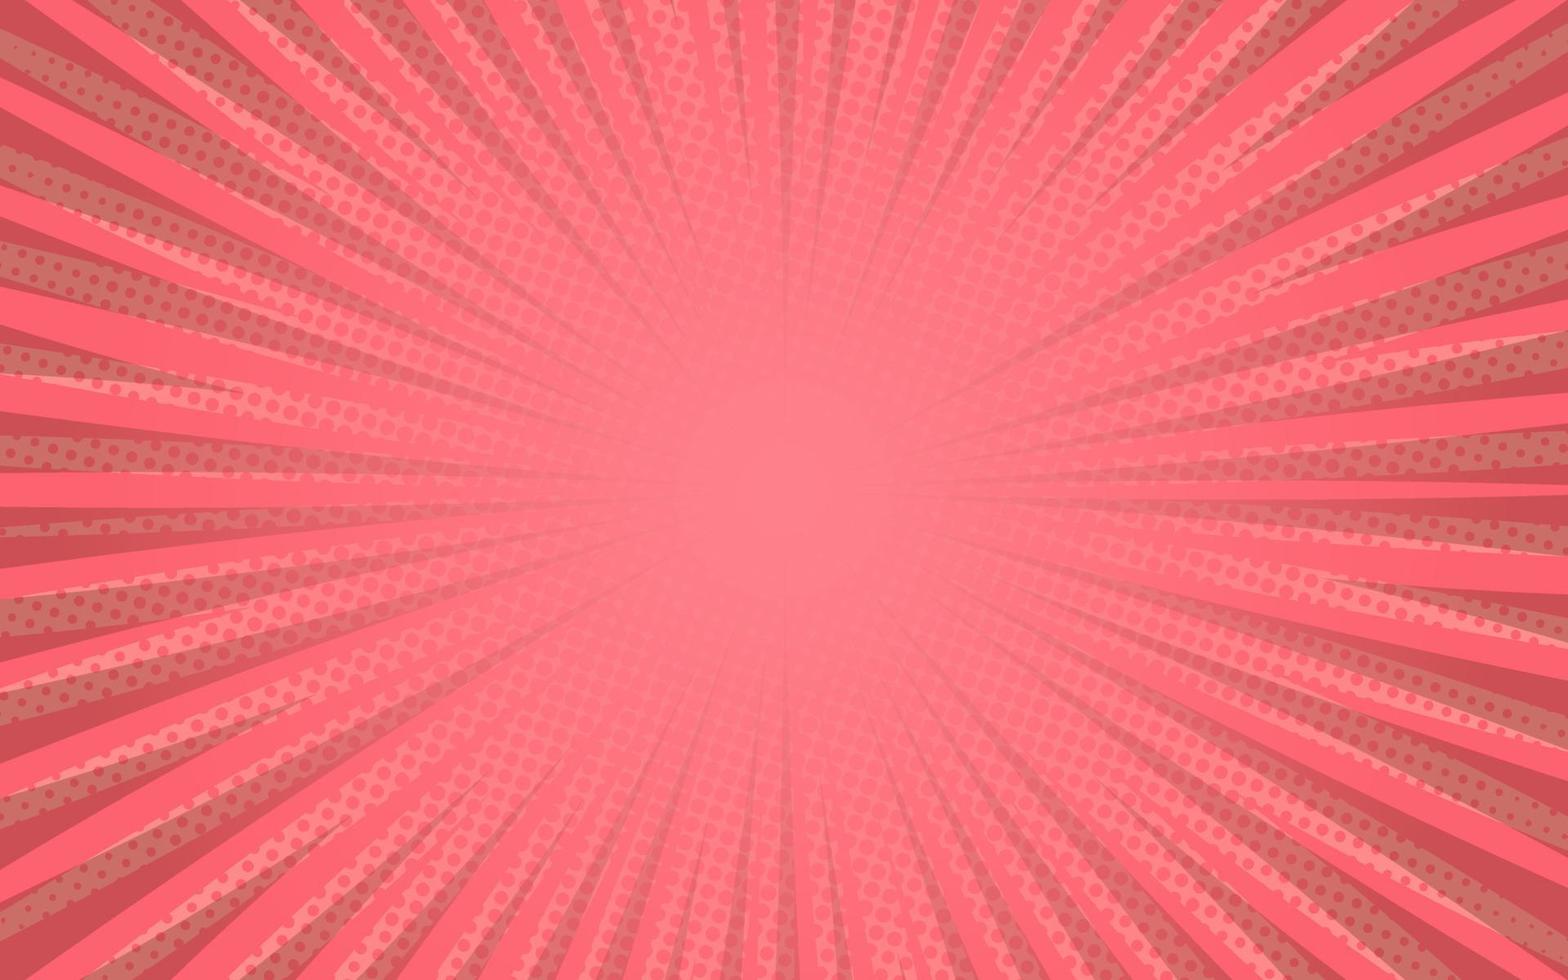 Sonnenstrahlen Retro-Vintage-Stil auf rosa Hintergrund, Comic-Muster mit Starburst und Halbton. Cartoon-Retro-Sunburst-Effekt mit Punkten. Strahlen. Sommer-Banner-Vektor-Illustration vektor